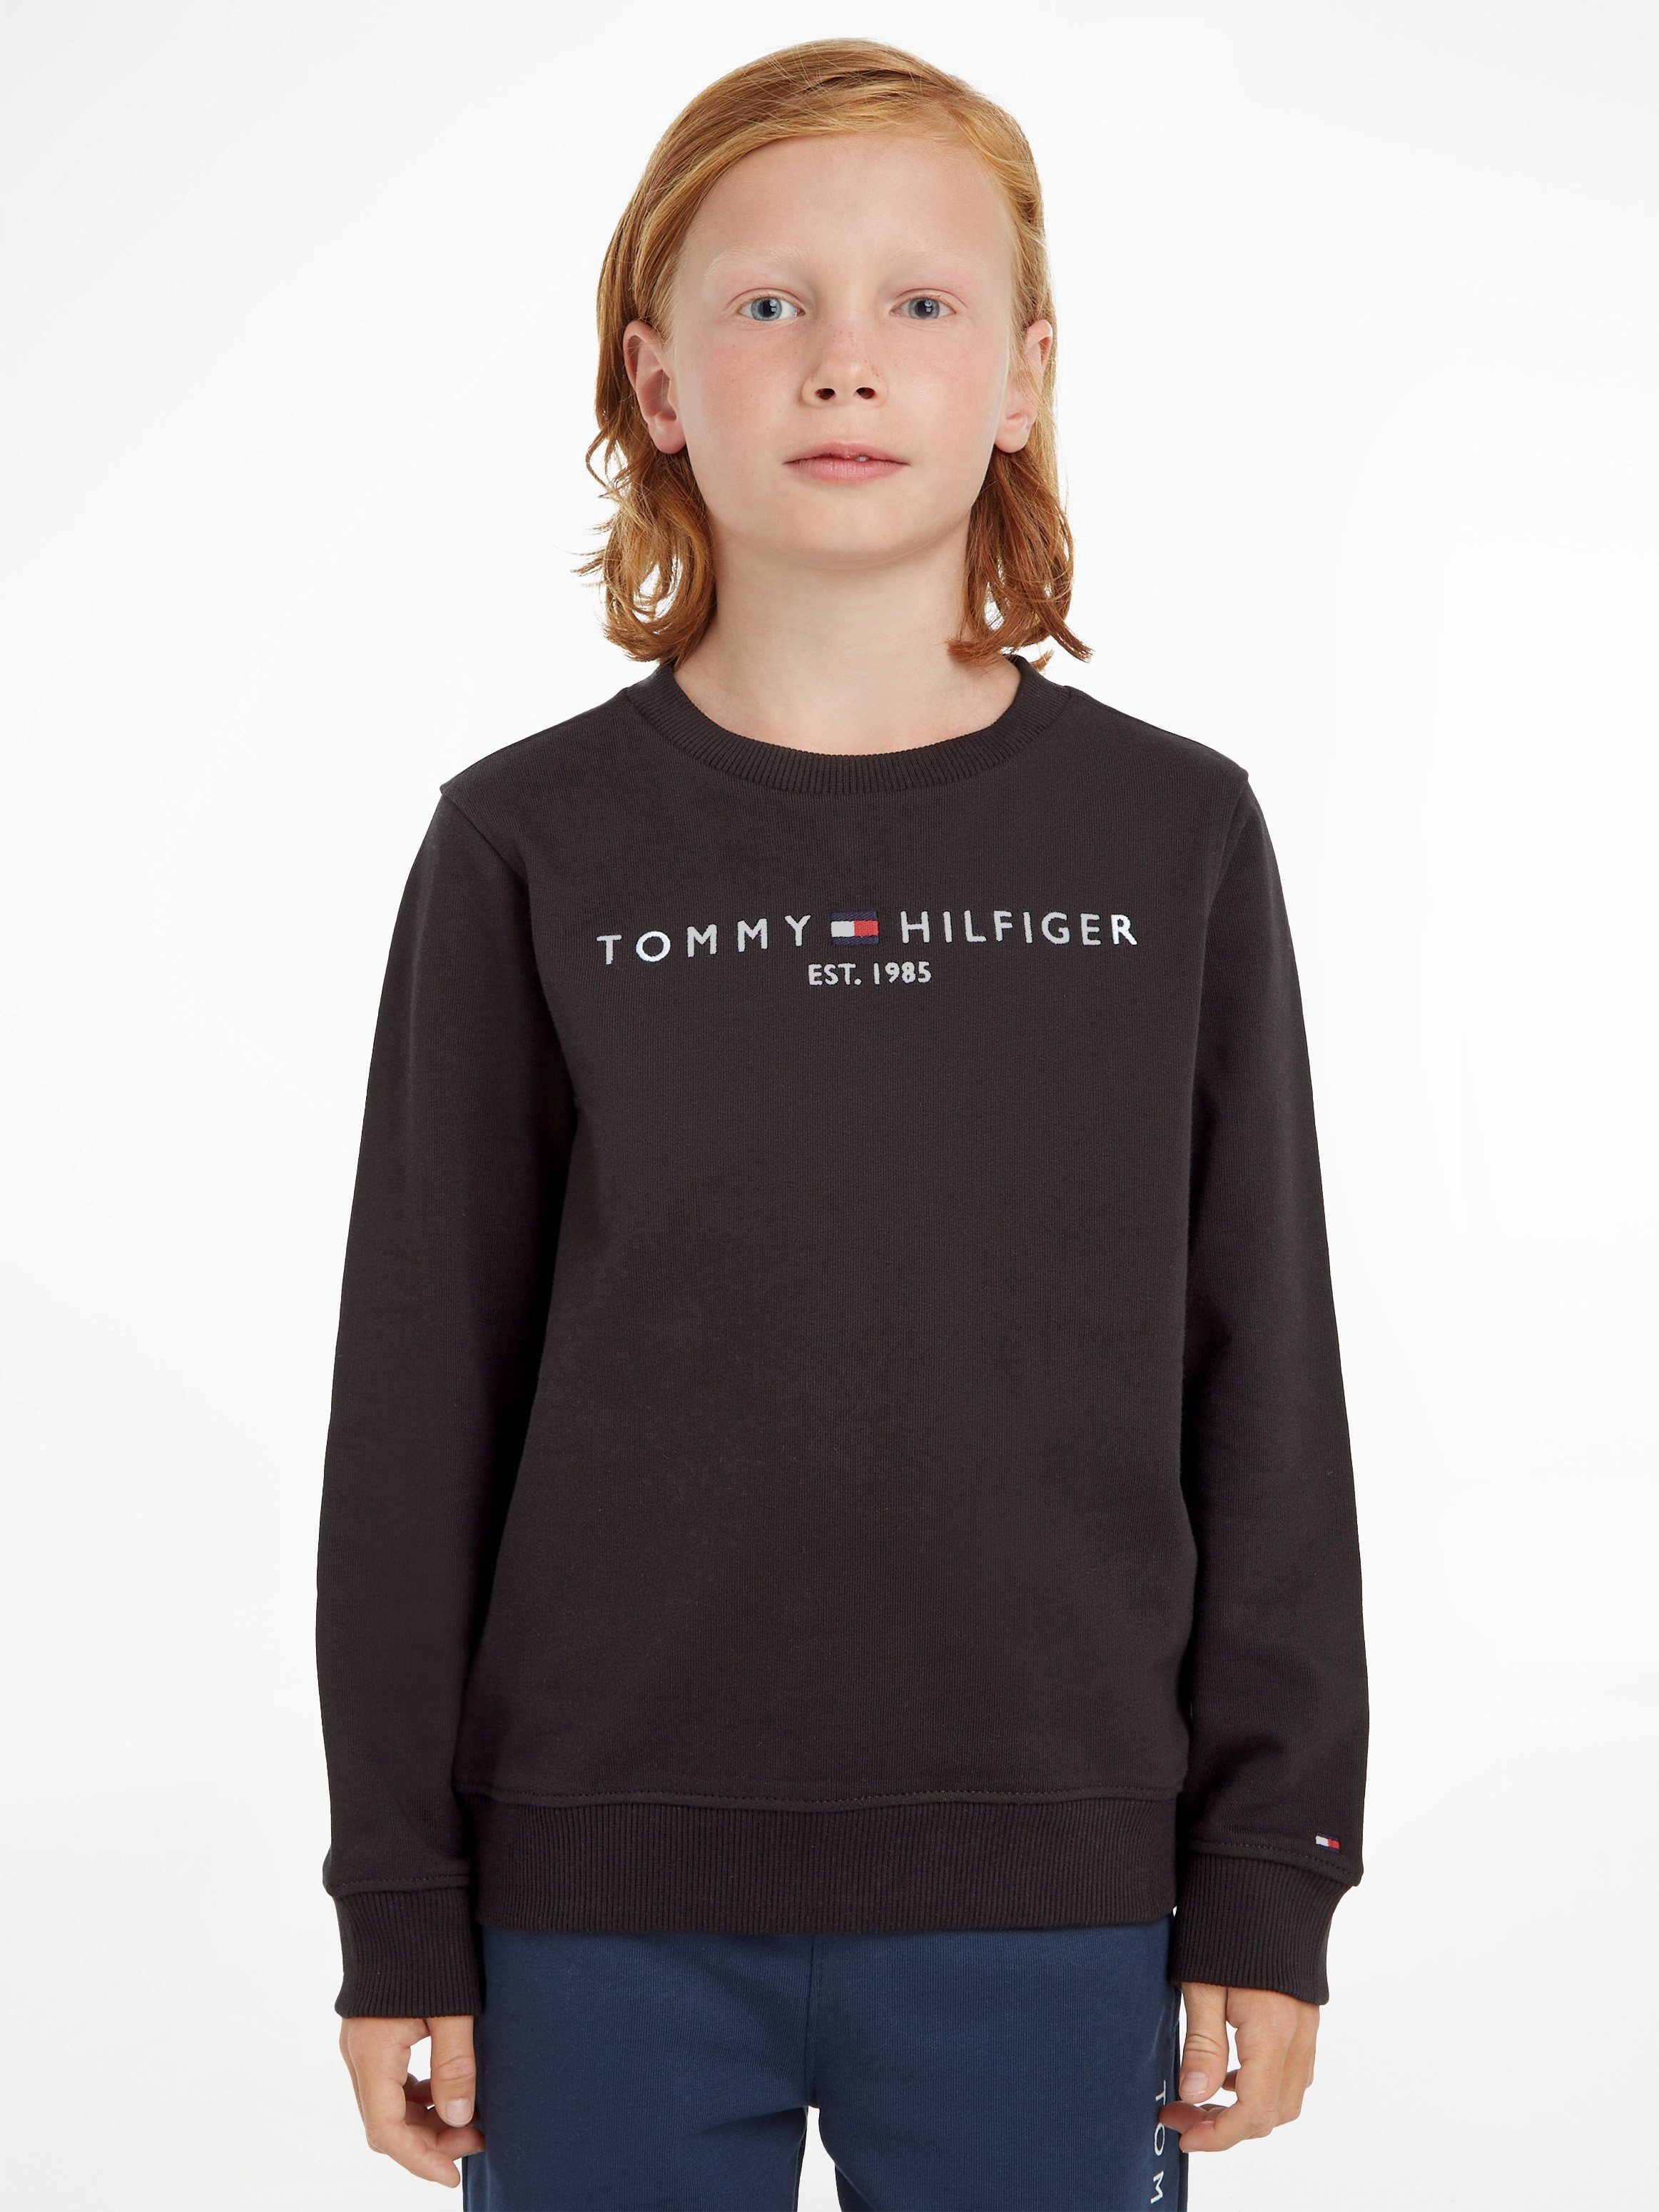 Mädchen ESSENTIAL Hilfiger Tommy und Jungen SWEATSHIRT Sweatshirt für